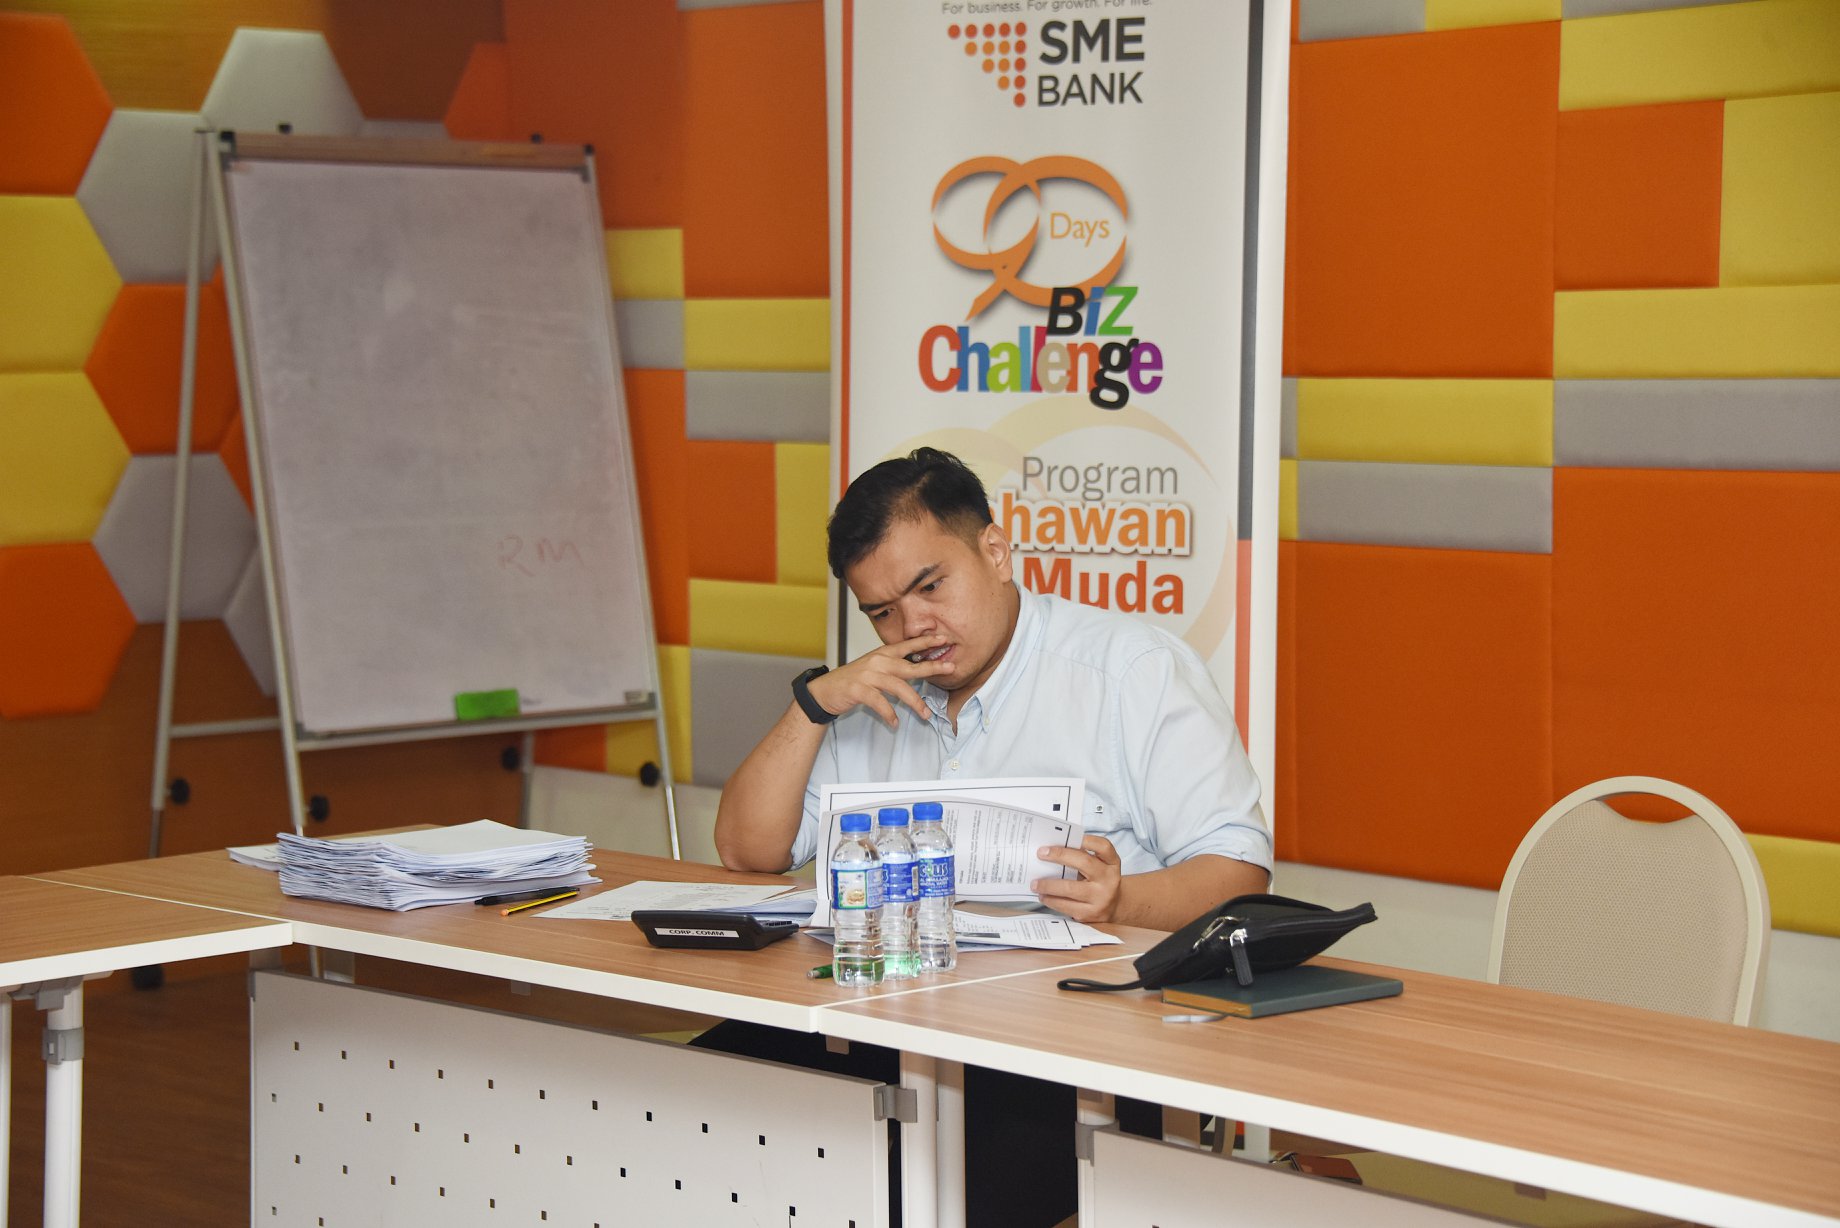 SME Bank 90-Days Biz Challenge 2019 Judging Session